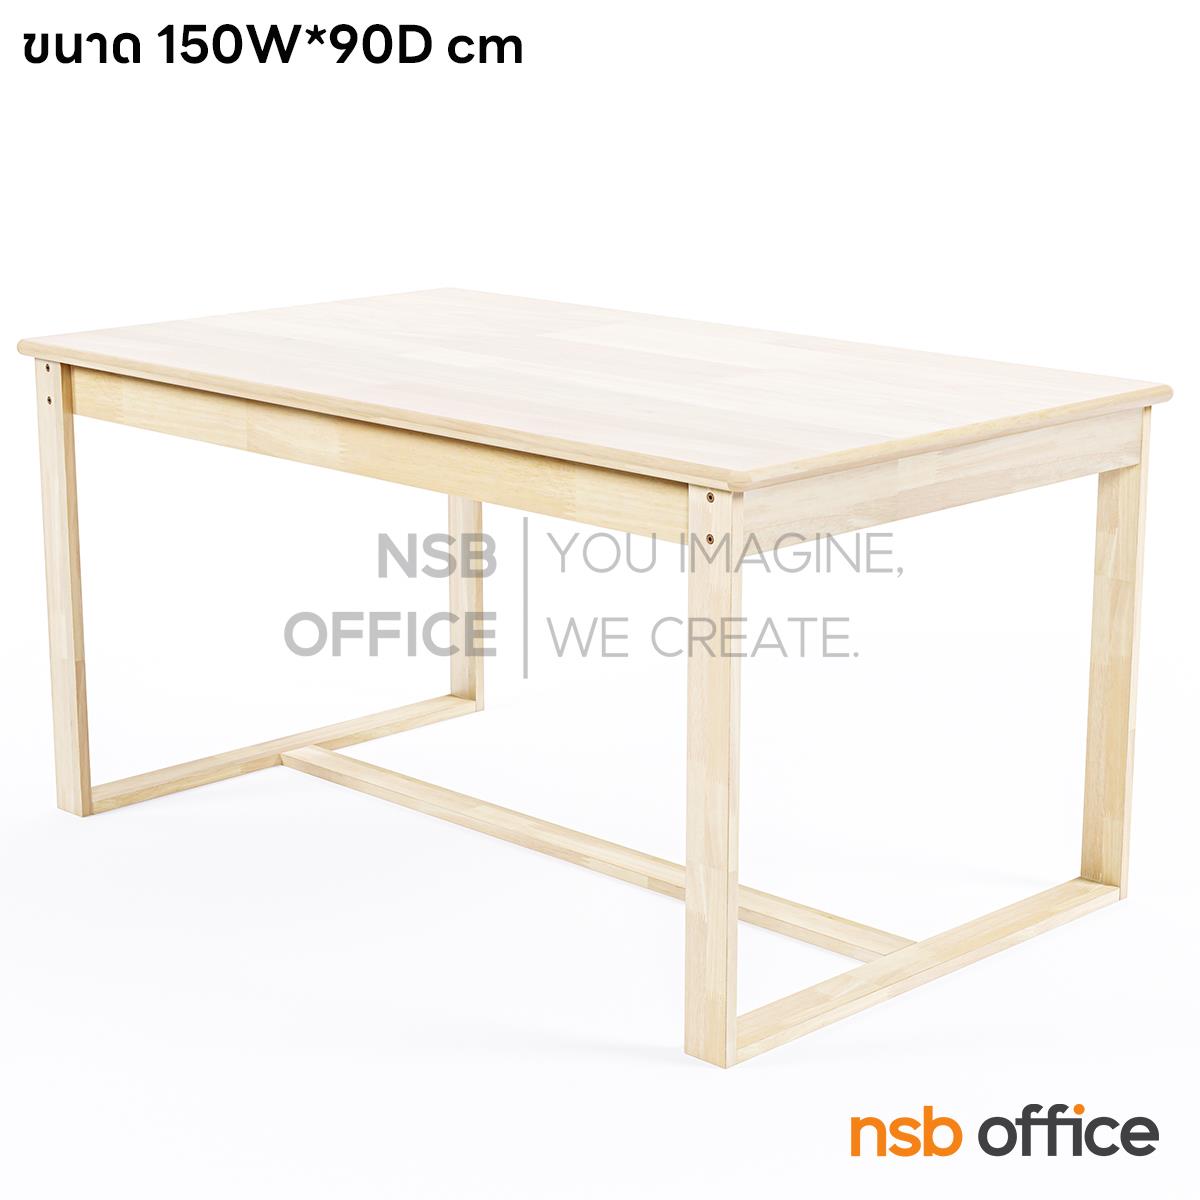 G20A059:โต๊ะหน้าไม้ยางพารา รุ่น Tina (ทีน่า) ขนาด 150W , 180W cm. 